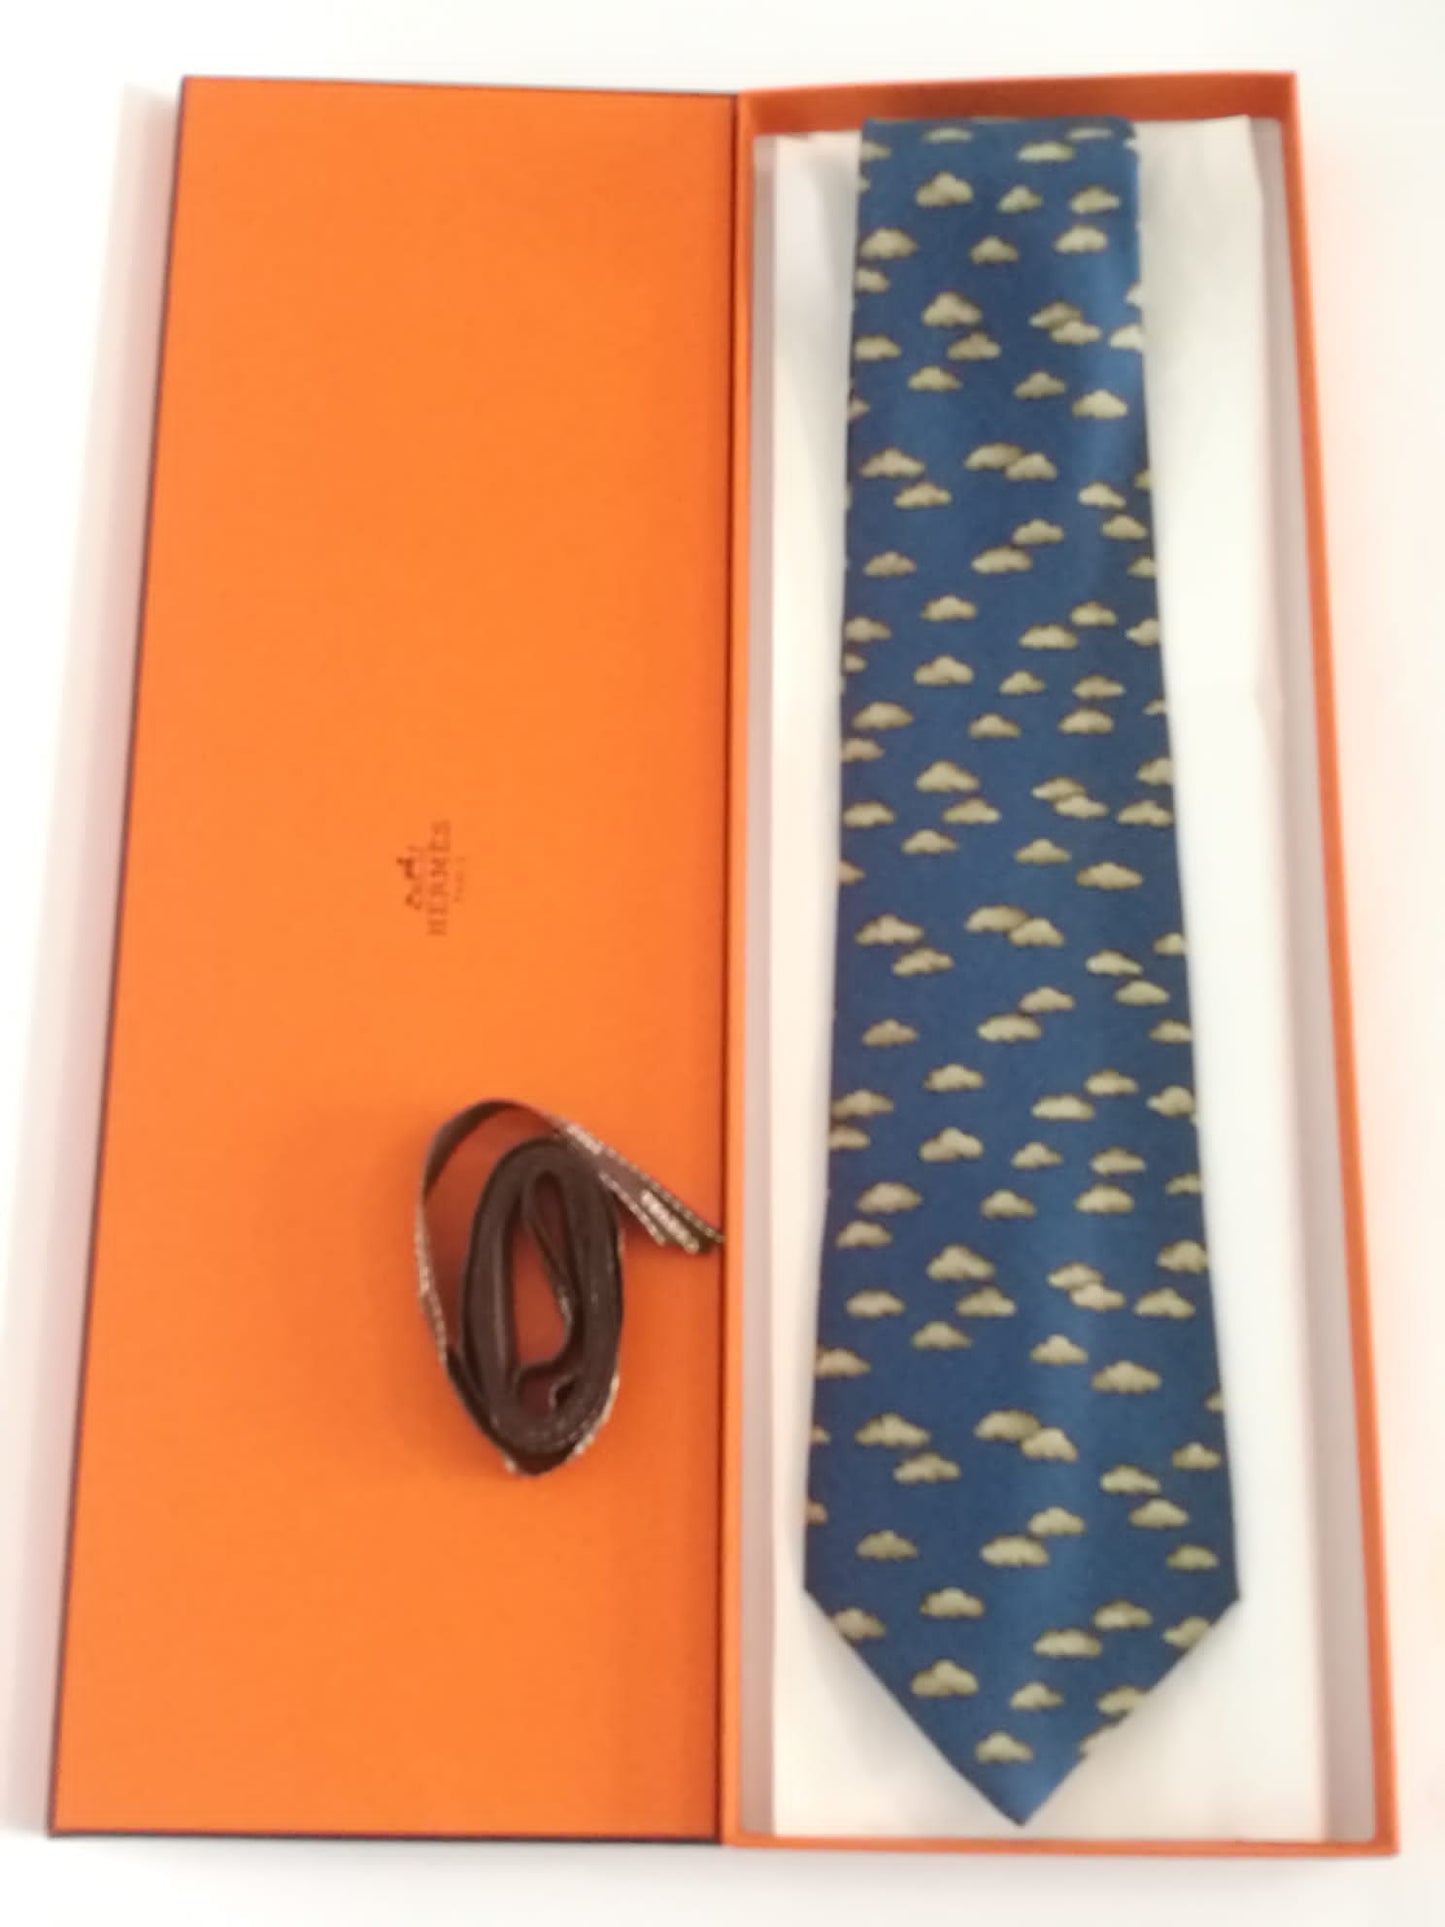 Cravatta Hermès con sfondo blu con nuvole grigie